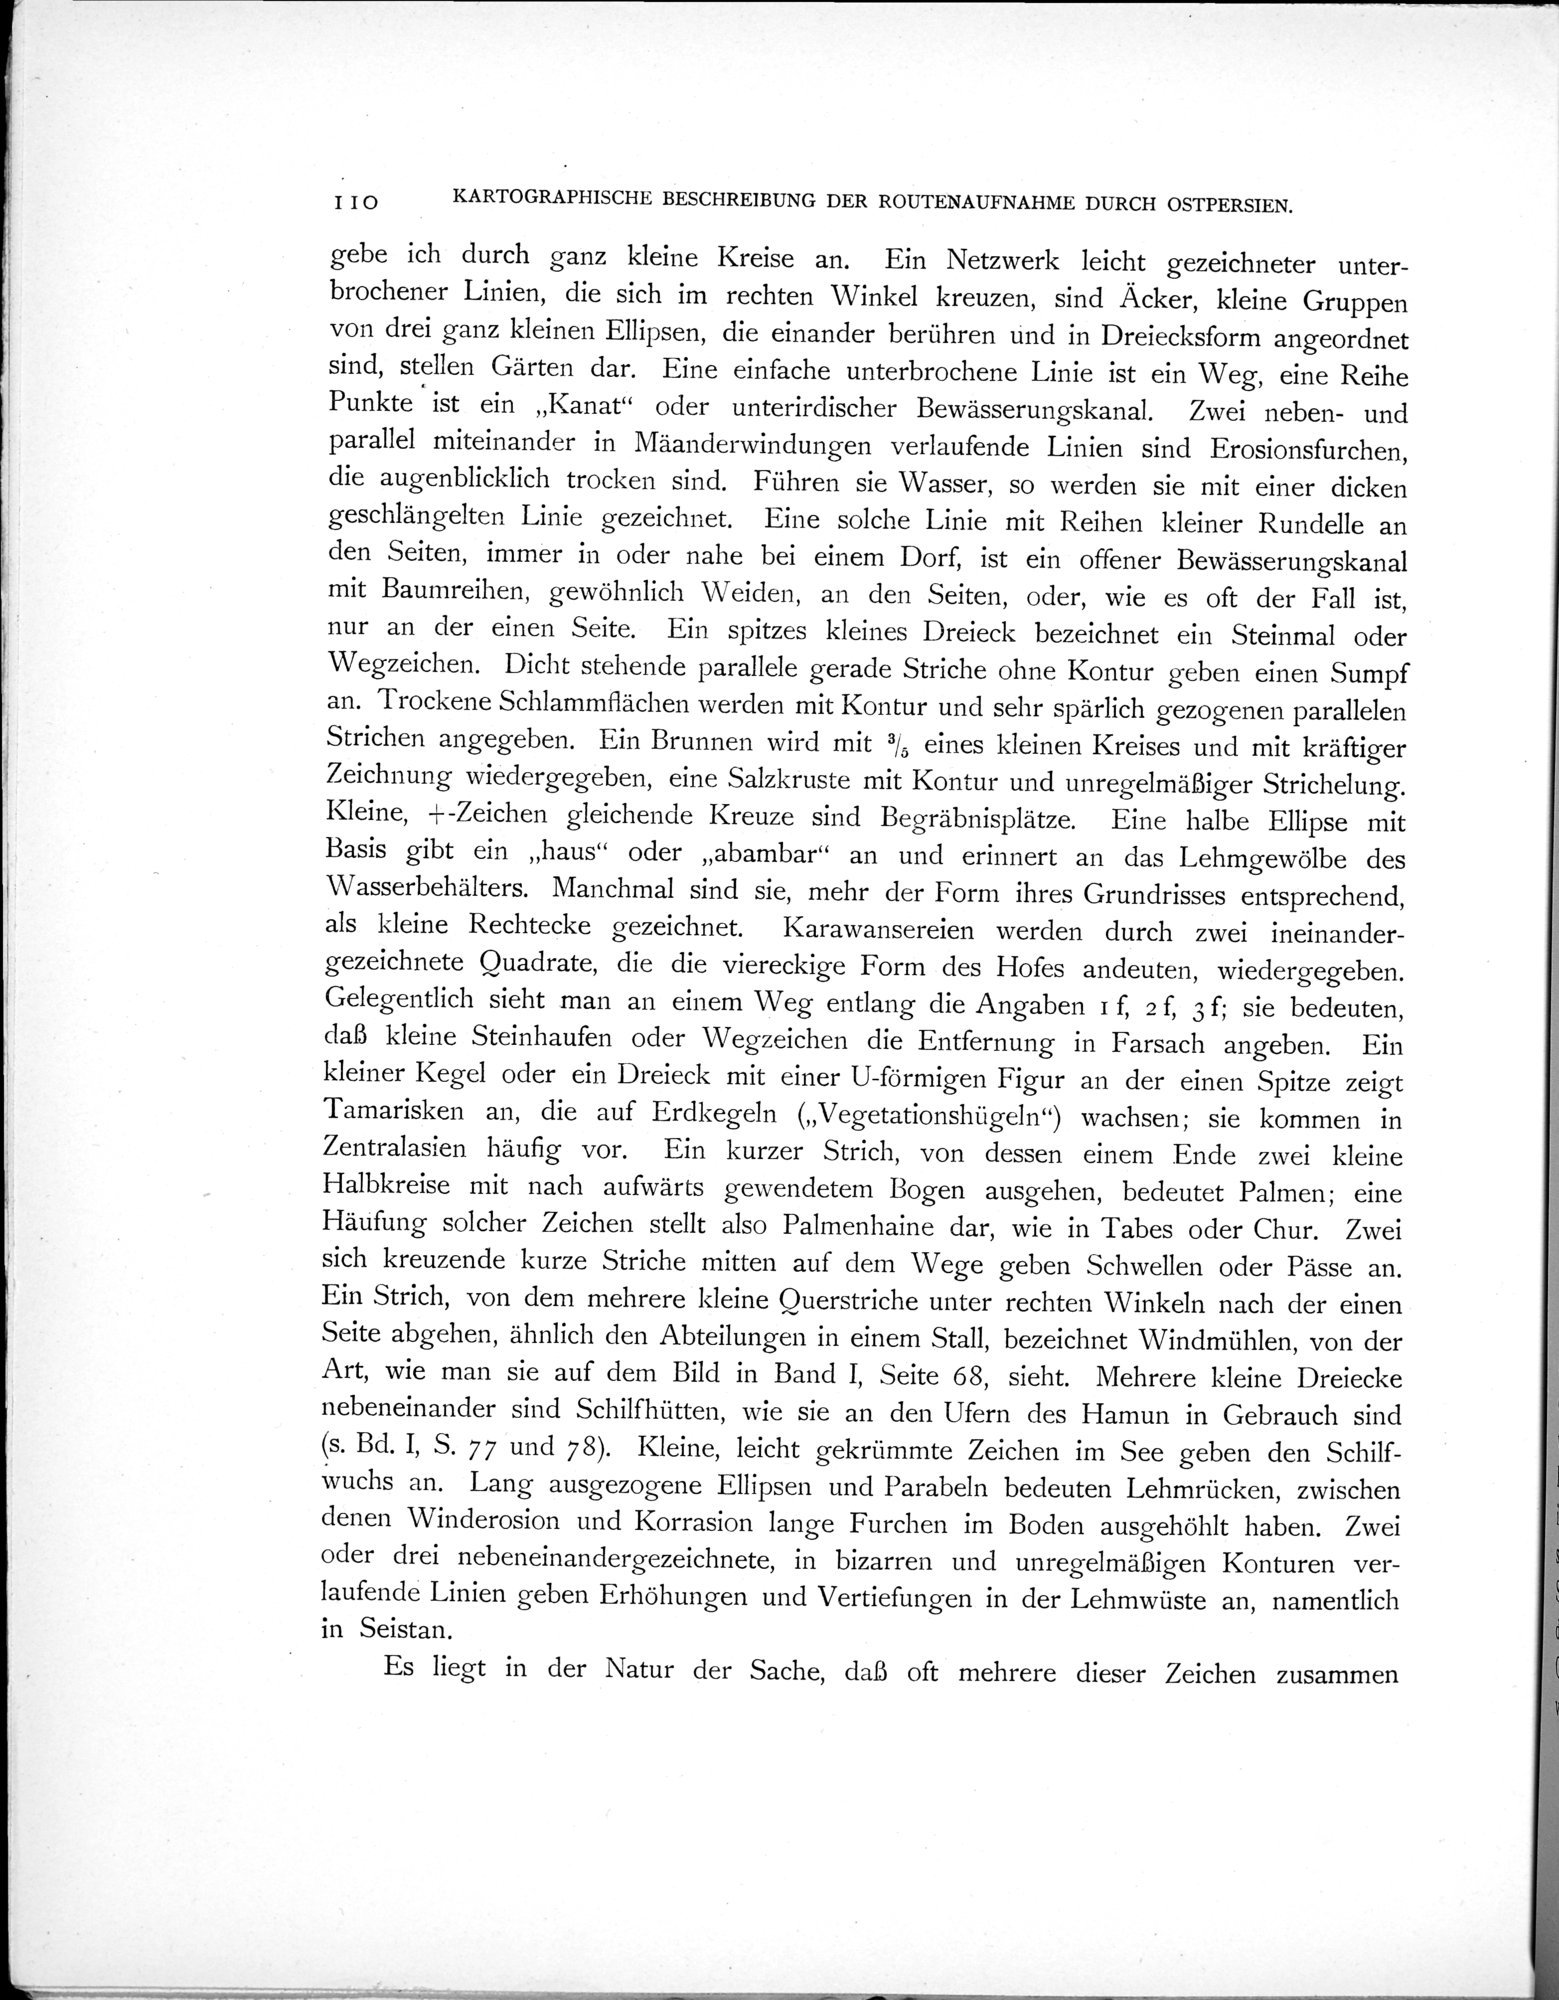 Eine Routenaufnahme durch Ostpersien : vol.2 / Page 164 (Grayscale High Resolution Image)